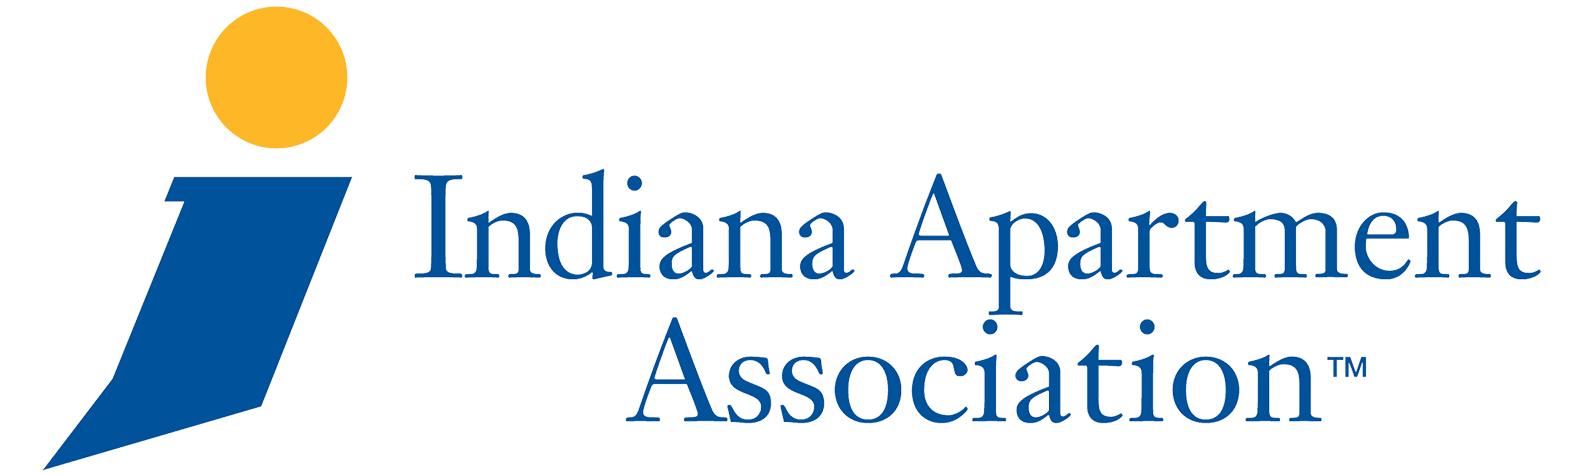 Indianan Apartment Association